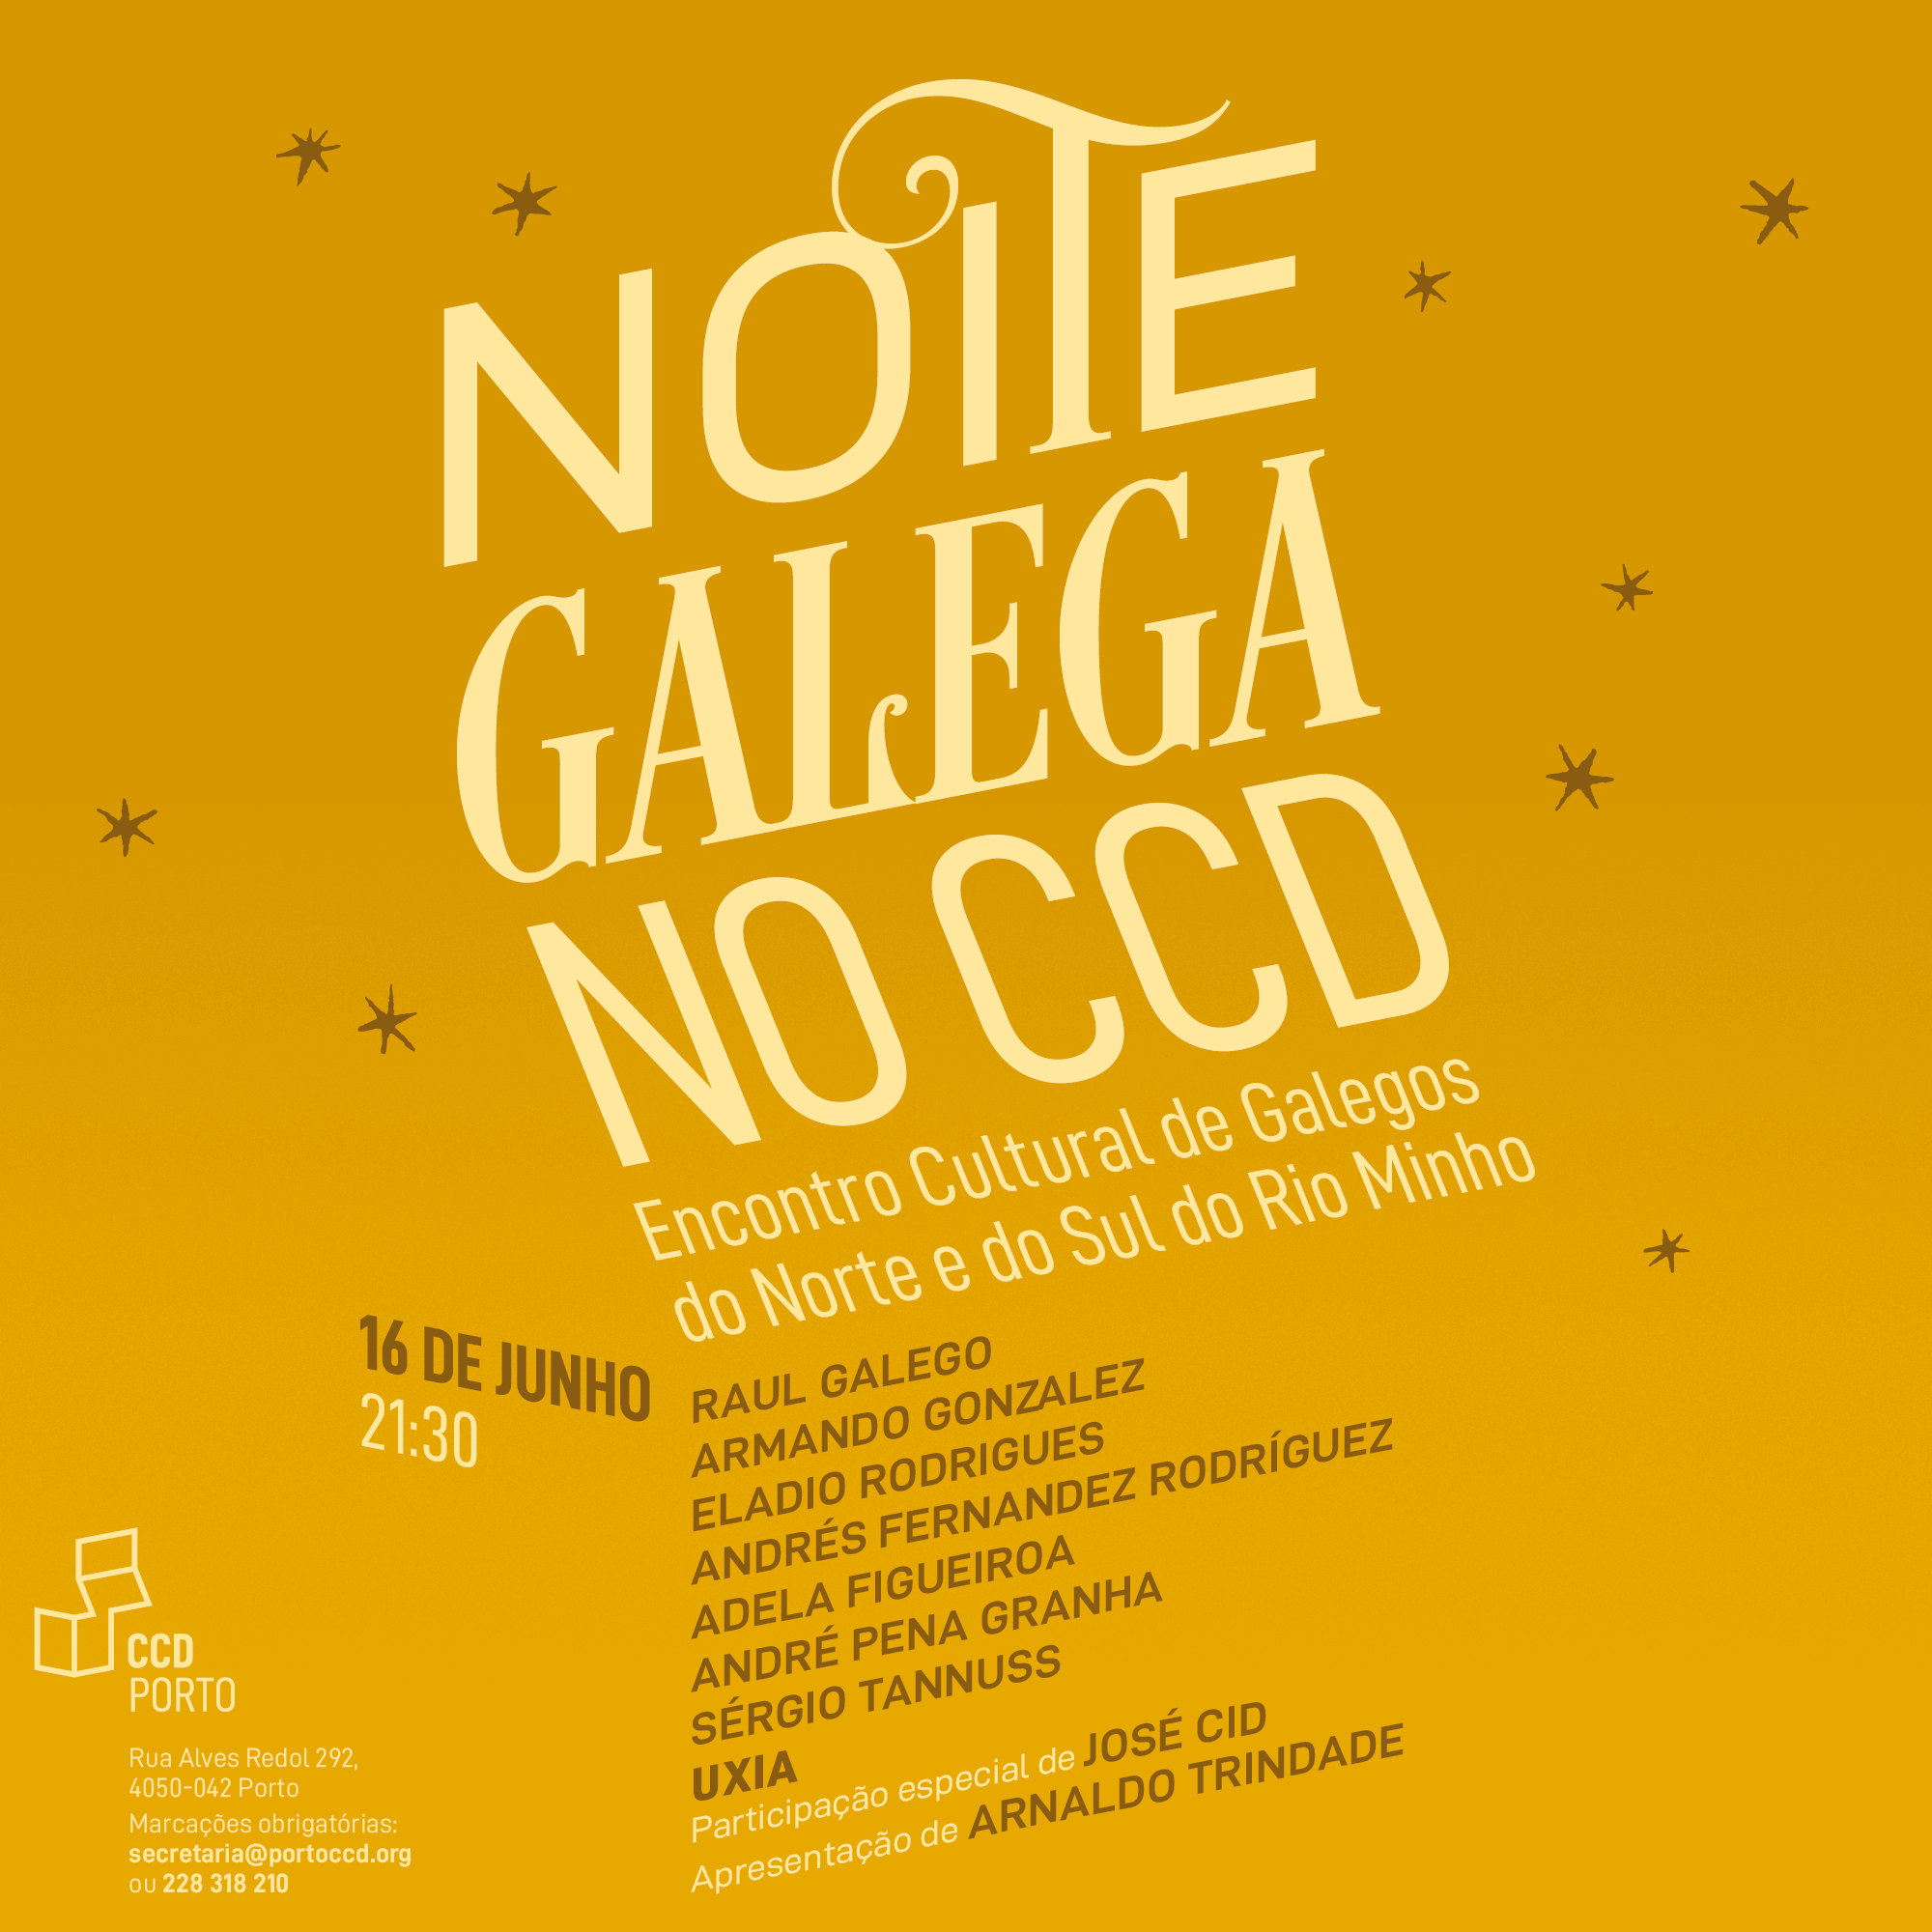 Leia mais sobre Noite Galega no CCD